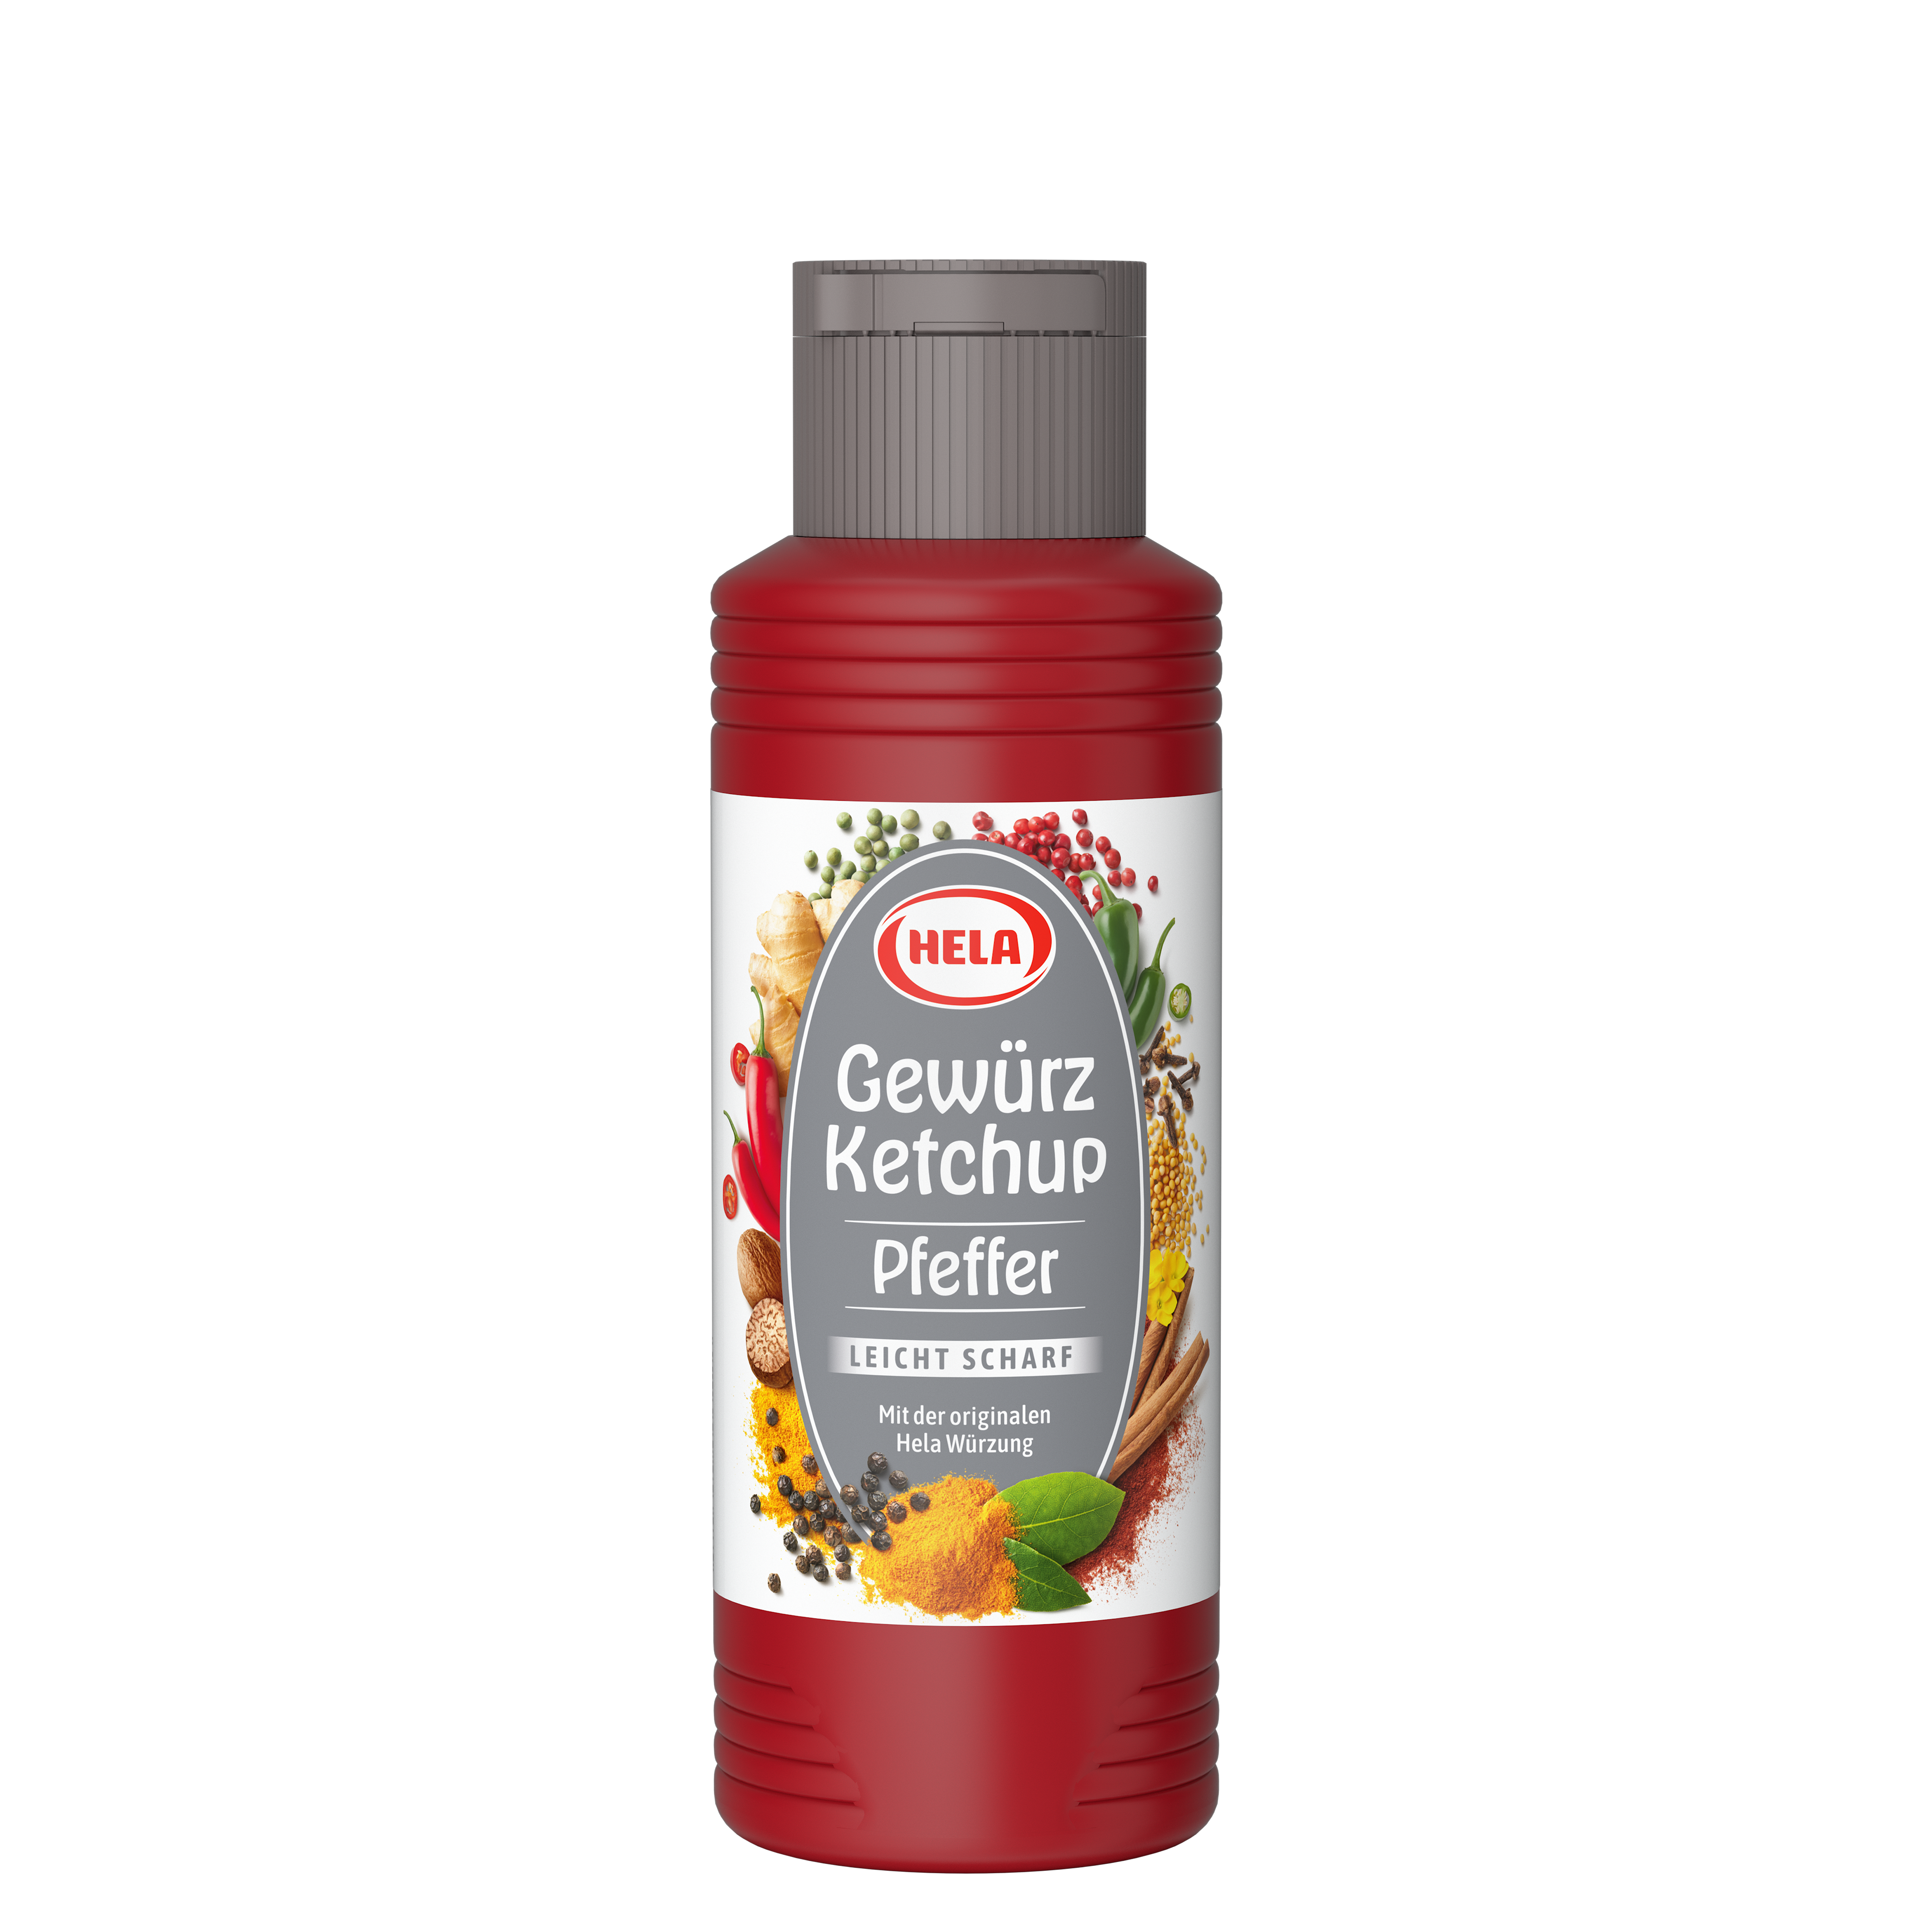 Gewürz Ketchup Pfeffer 300 ml